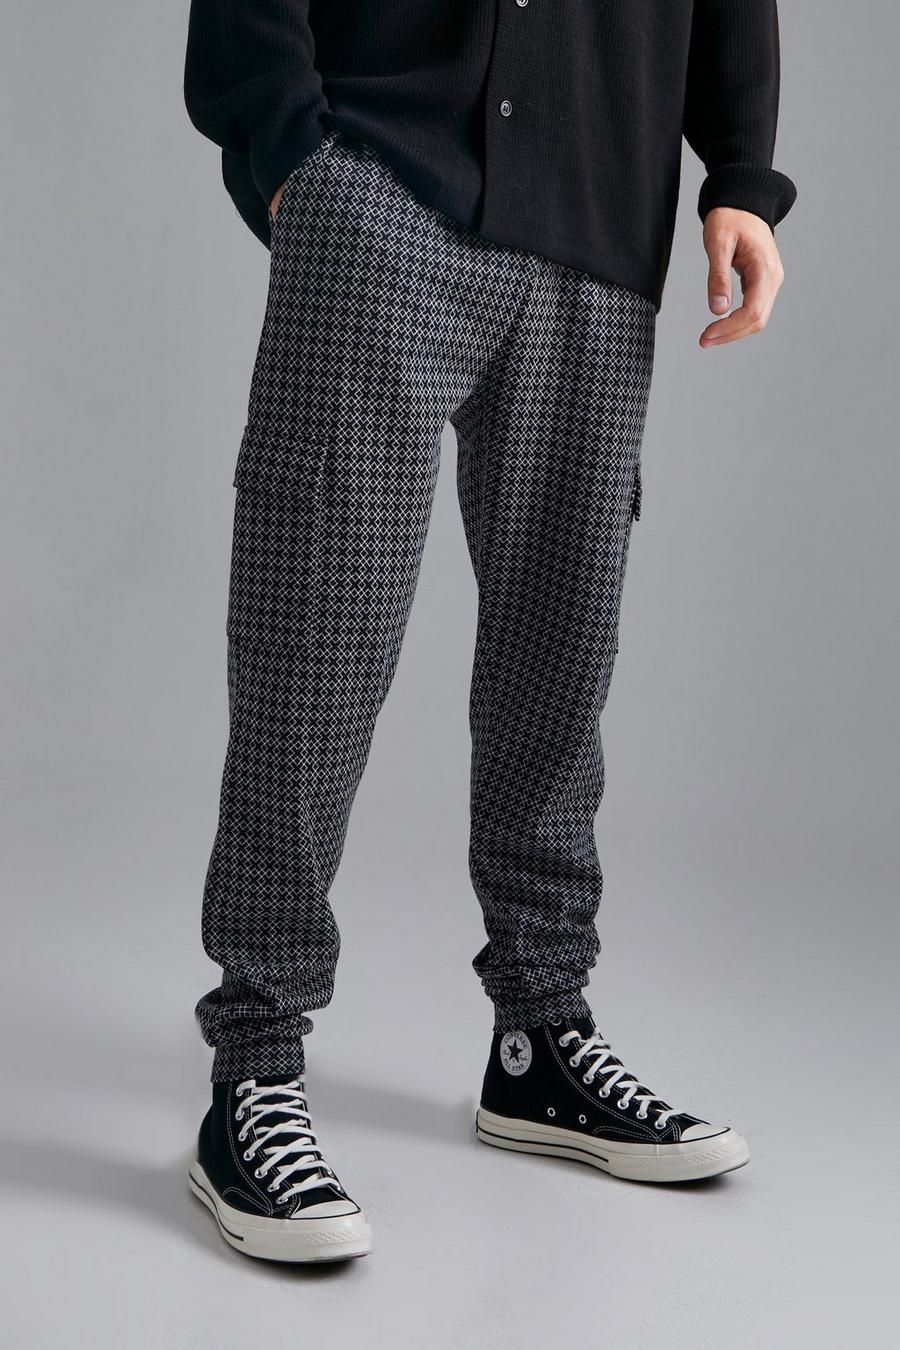 Pantaloni tuta Cargo Tall Smart in jacquard con polsini alle caviglie, Dark grey grigio